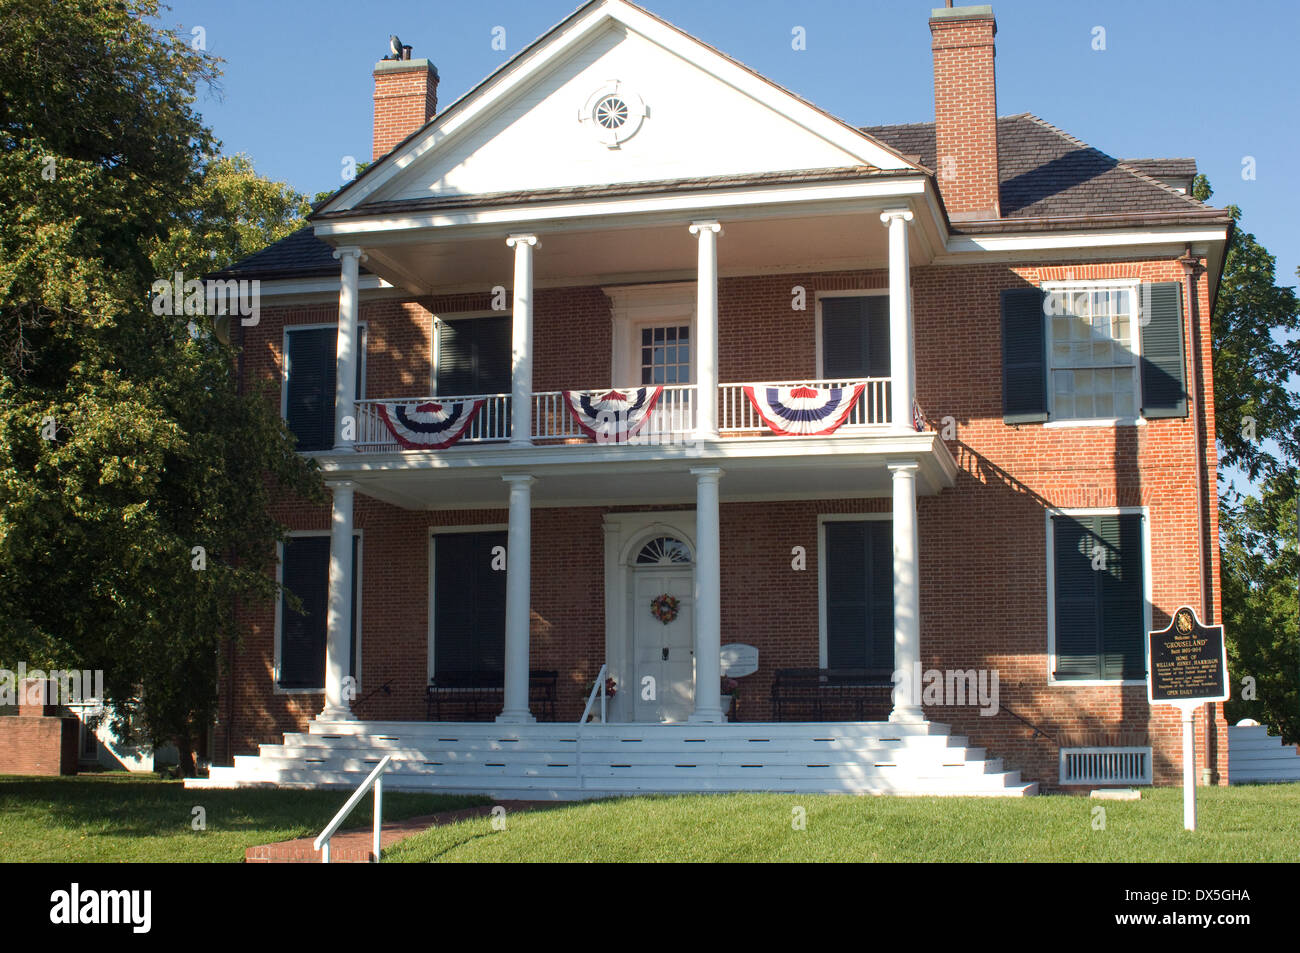 Grouseland, maison de William Henry Harrison, de l'emplacement de sa rencontre avec Tecumseh, Vincennes, Indiana. Photographie numérique Banque D'Images